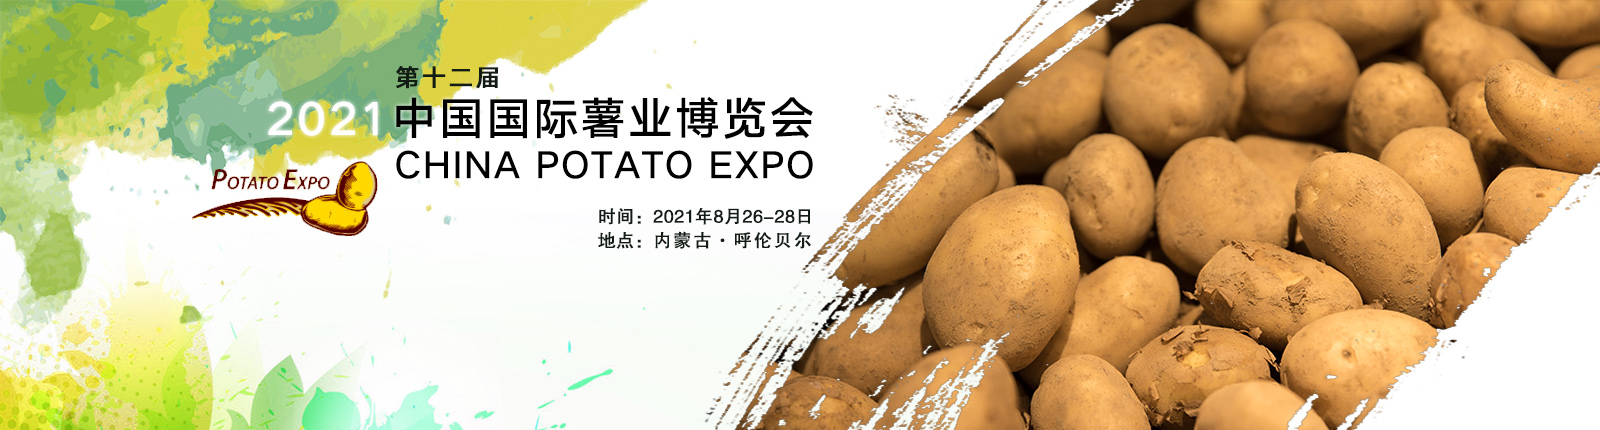 2021第12届中国国际薯业博览会